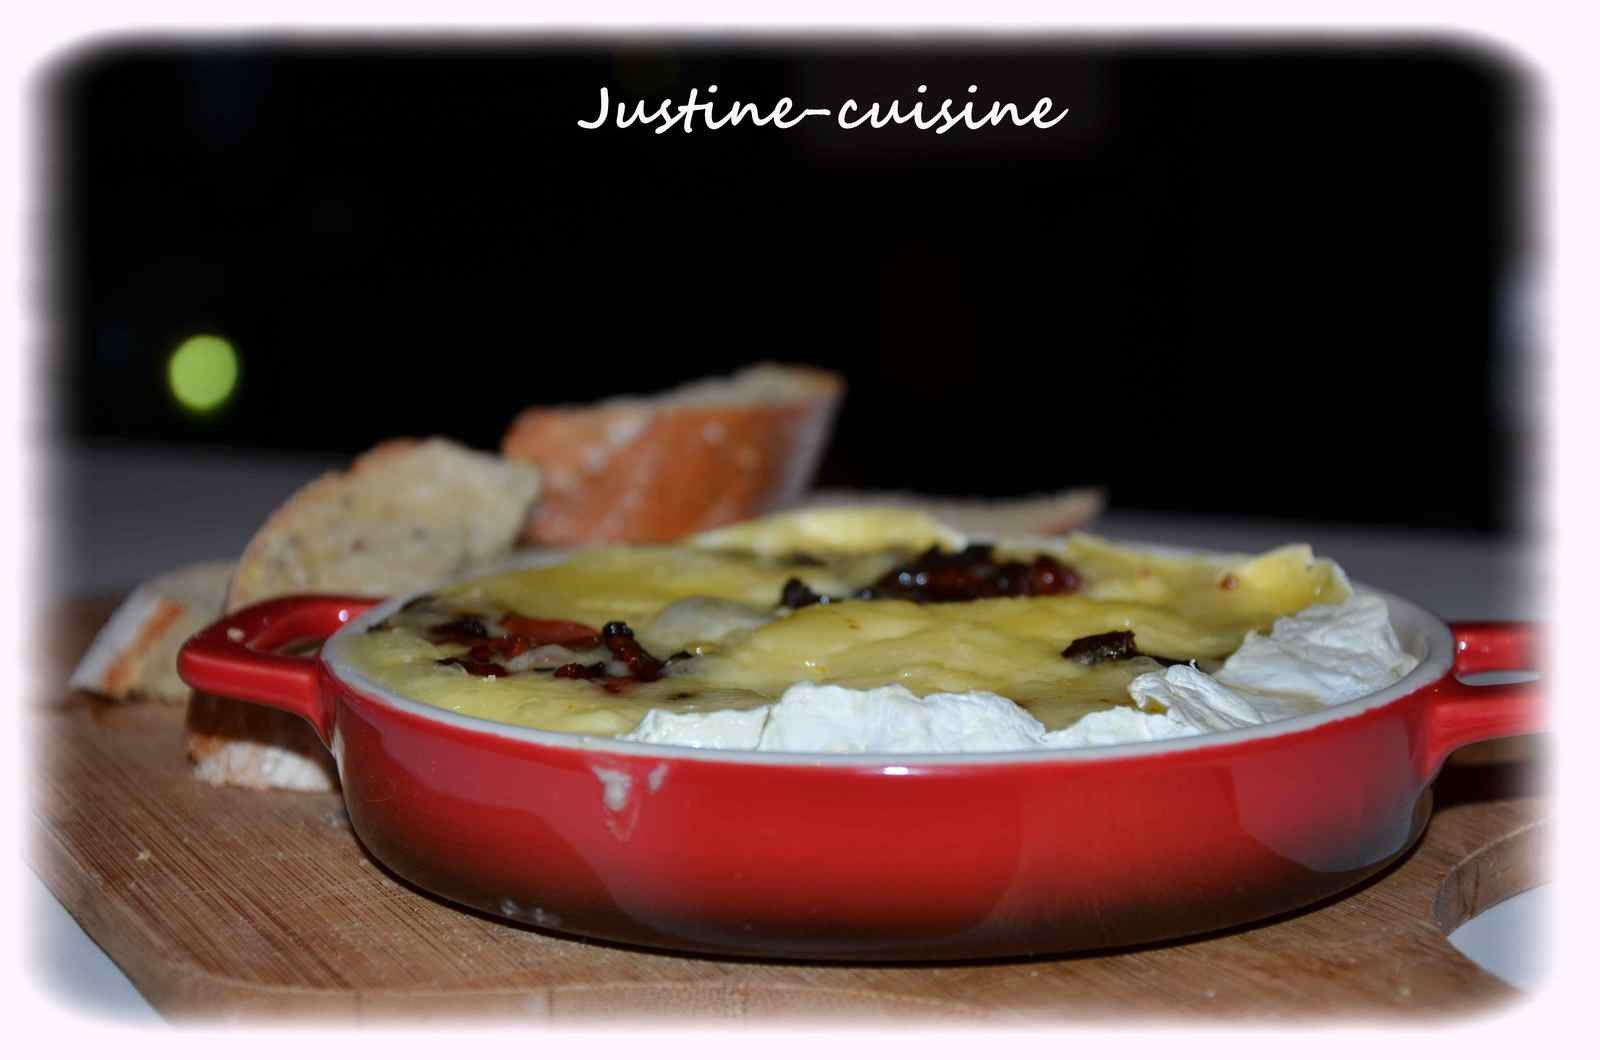 Camembert rôti au four, farci aux lardons et échalote - Justine-cuisine